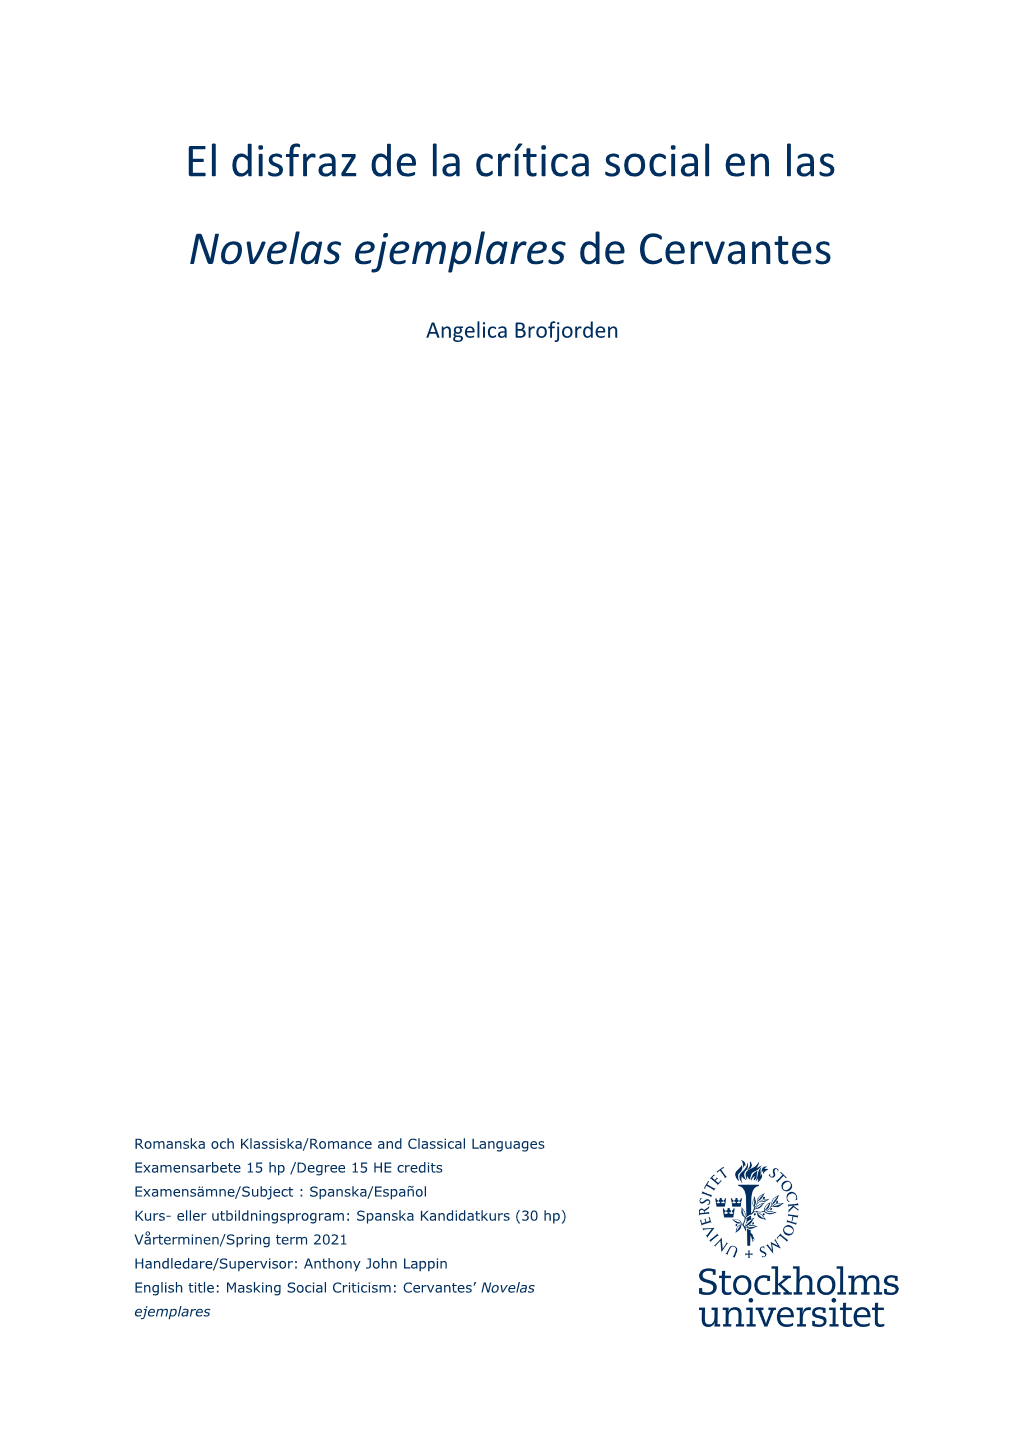 El Disfraz De La Crítica Social En Las Novelas Ejemplares De Cervantes